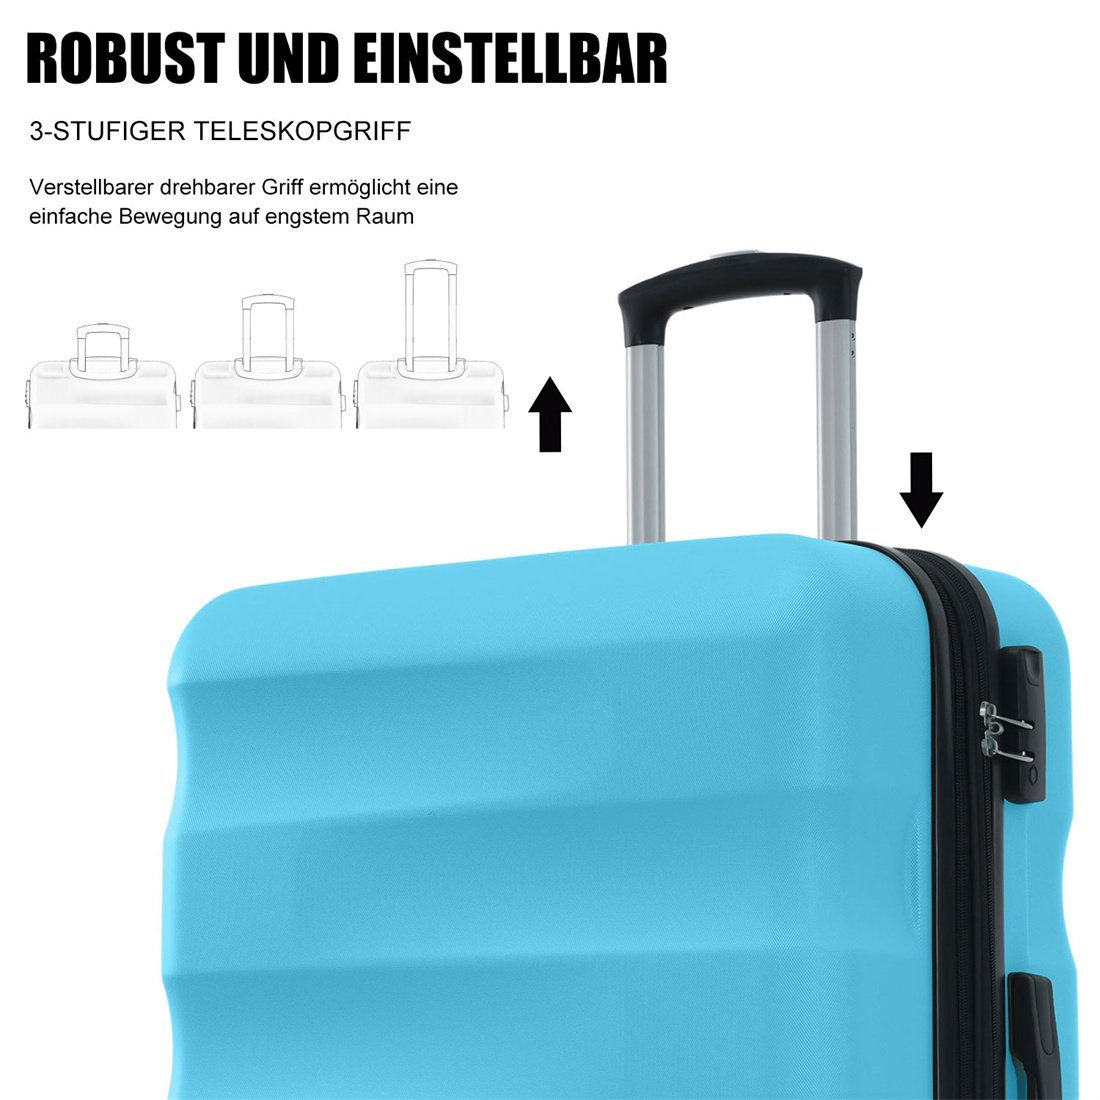 ABS-Material 69*44.5*26.5cm, Koffer azurblau Hartschalen-Koffer, Reisekoffer, DÖRÖY